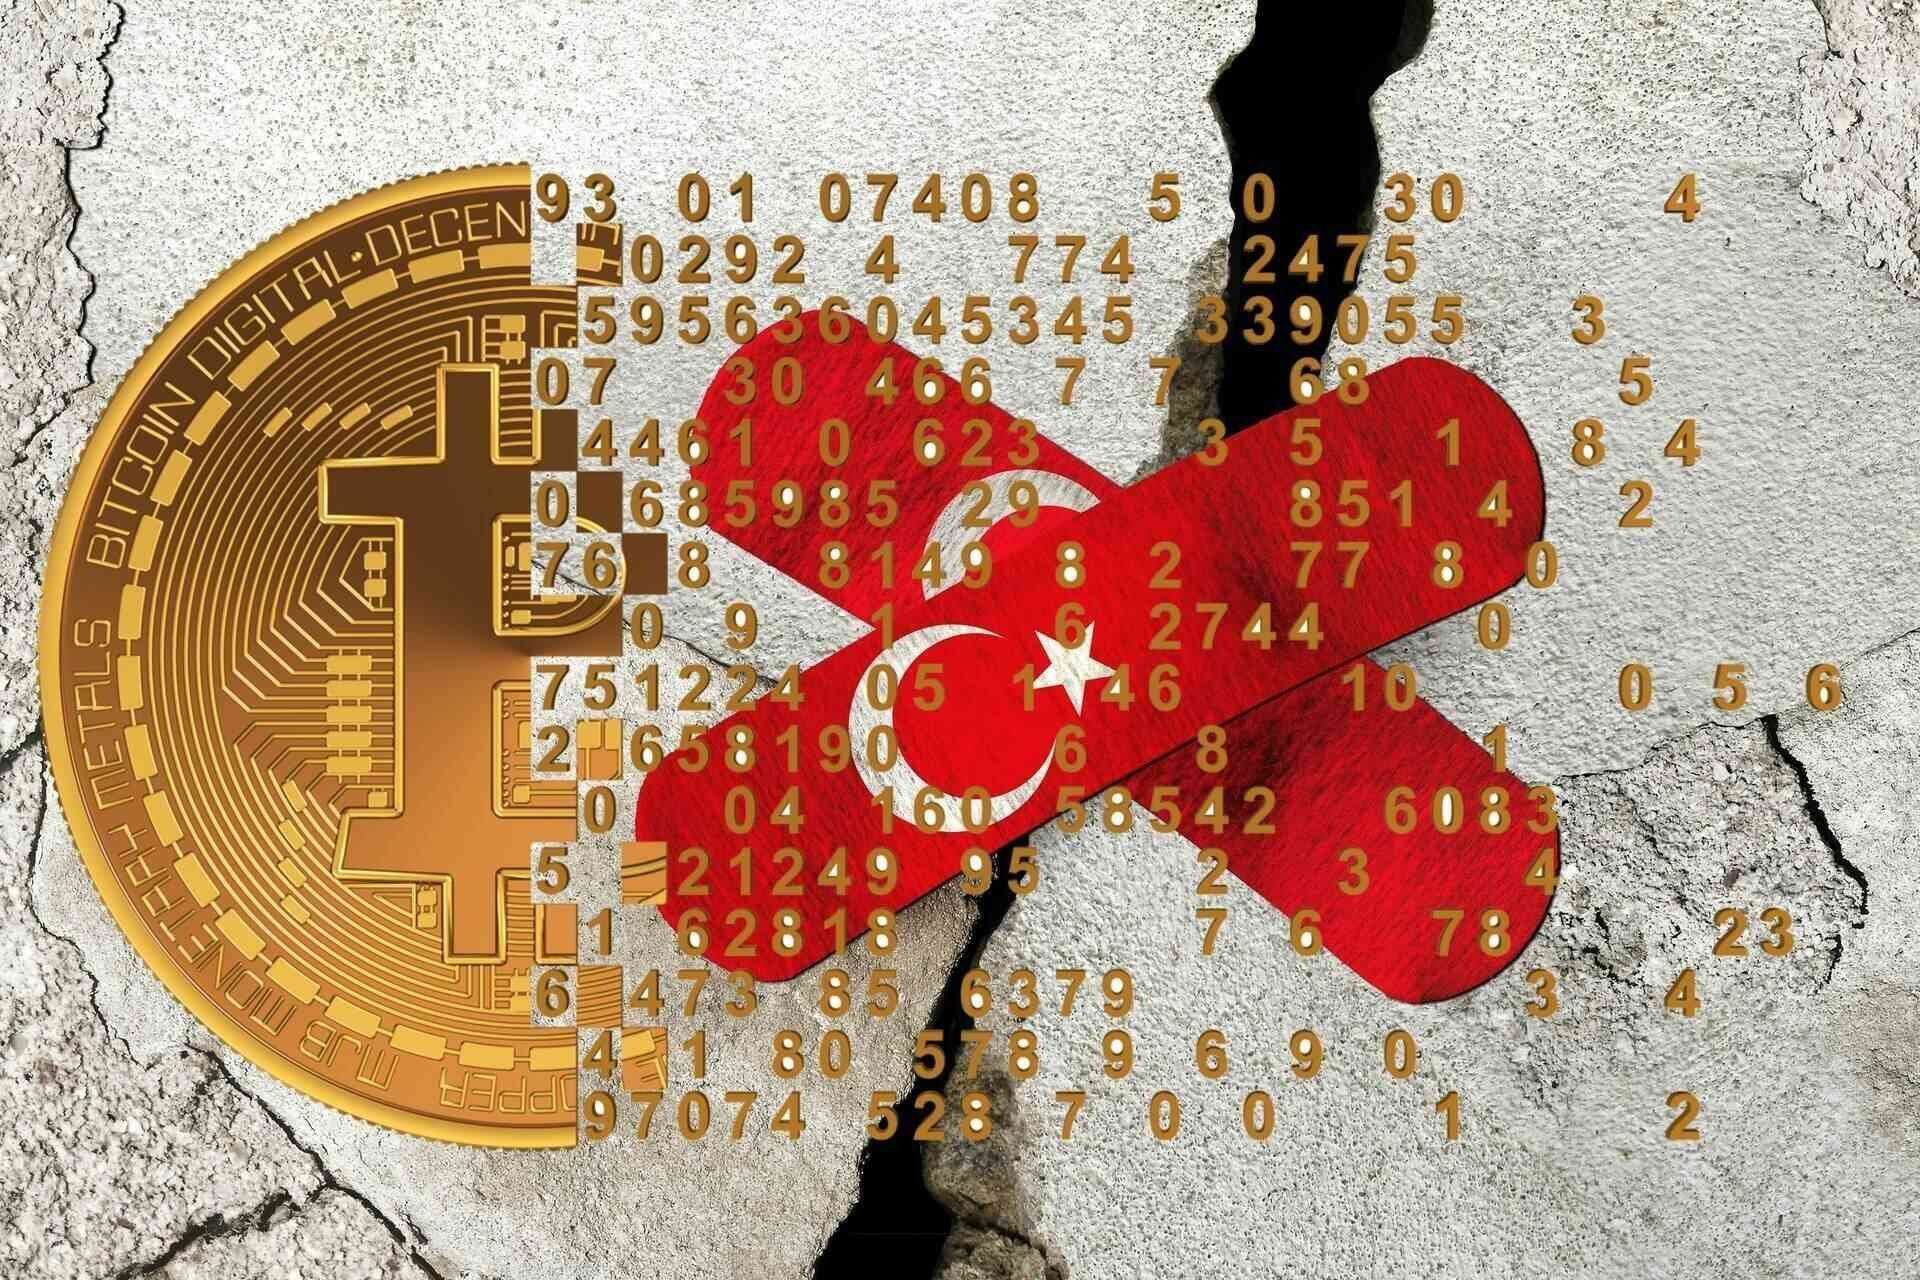 Kriptovaliutos: po stipraus žemės drebėjimo, įvykusio Pietų Anatolijoje 5 m. vasario 6–2023 d., pasaulinė kriptovaliutų ir „Blockchain“ pramonė taip pat įsipareigoja padėti aukoms didelėmis aukomis.